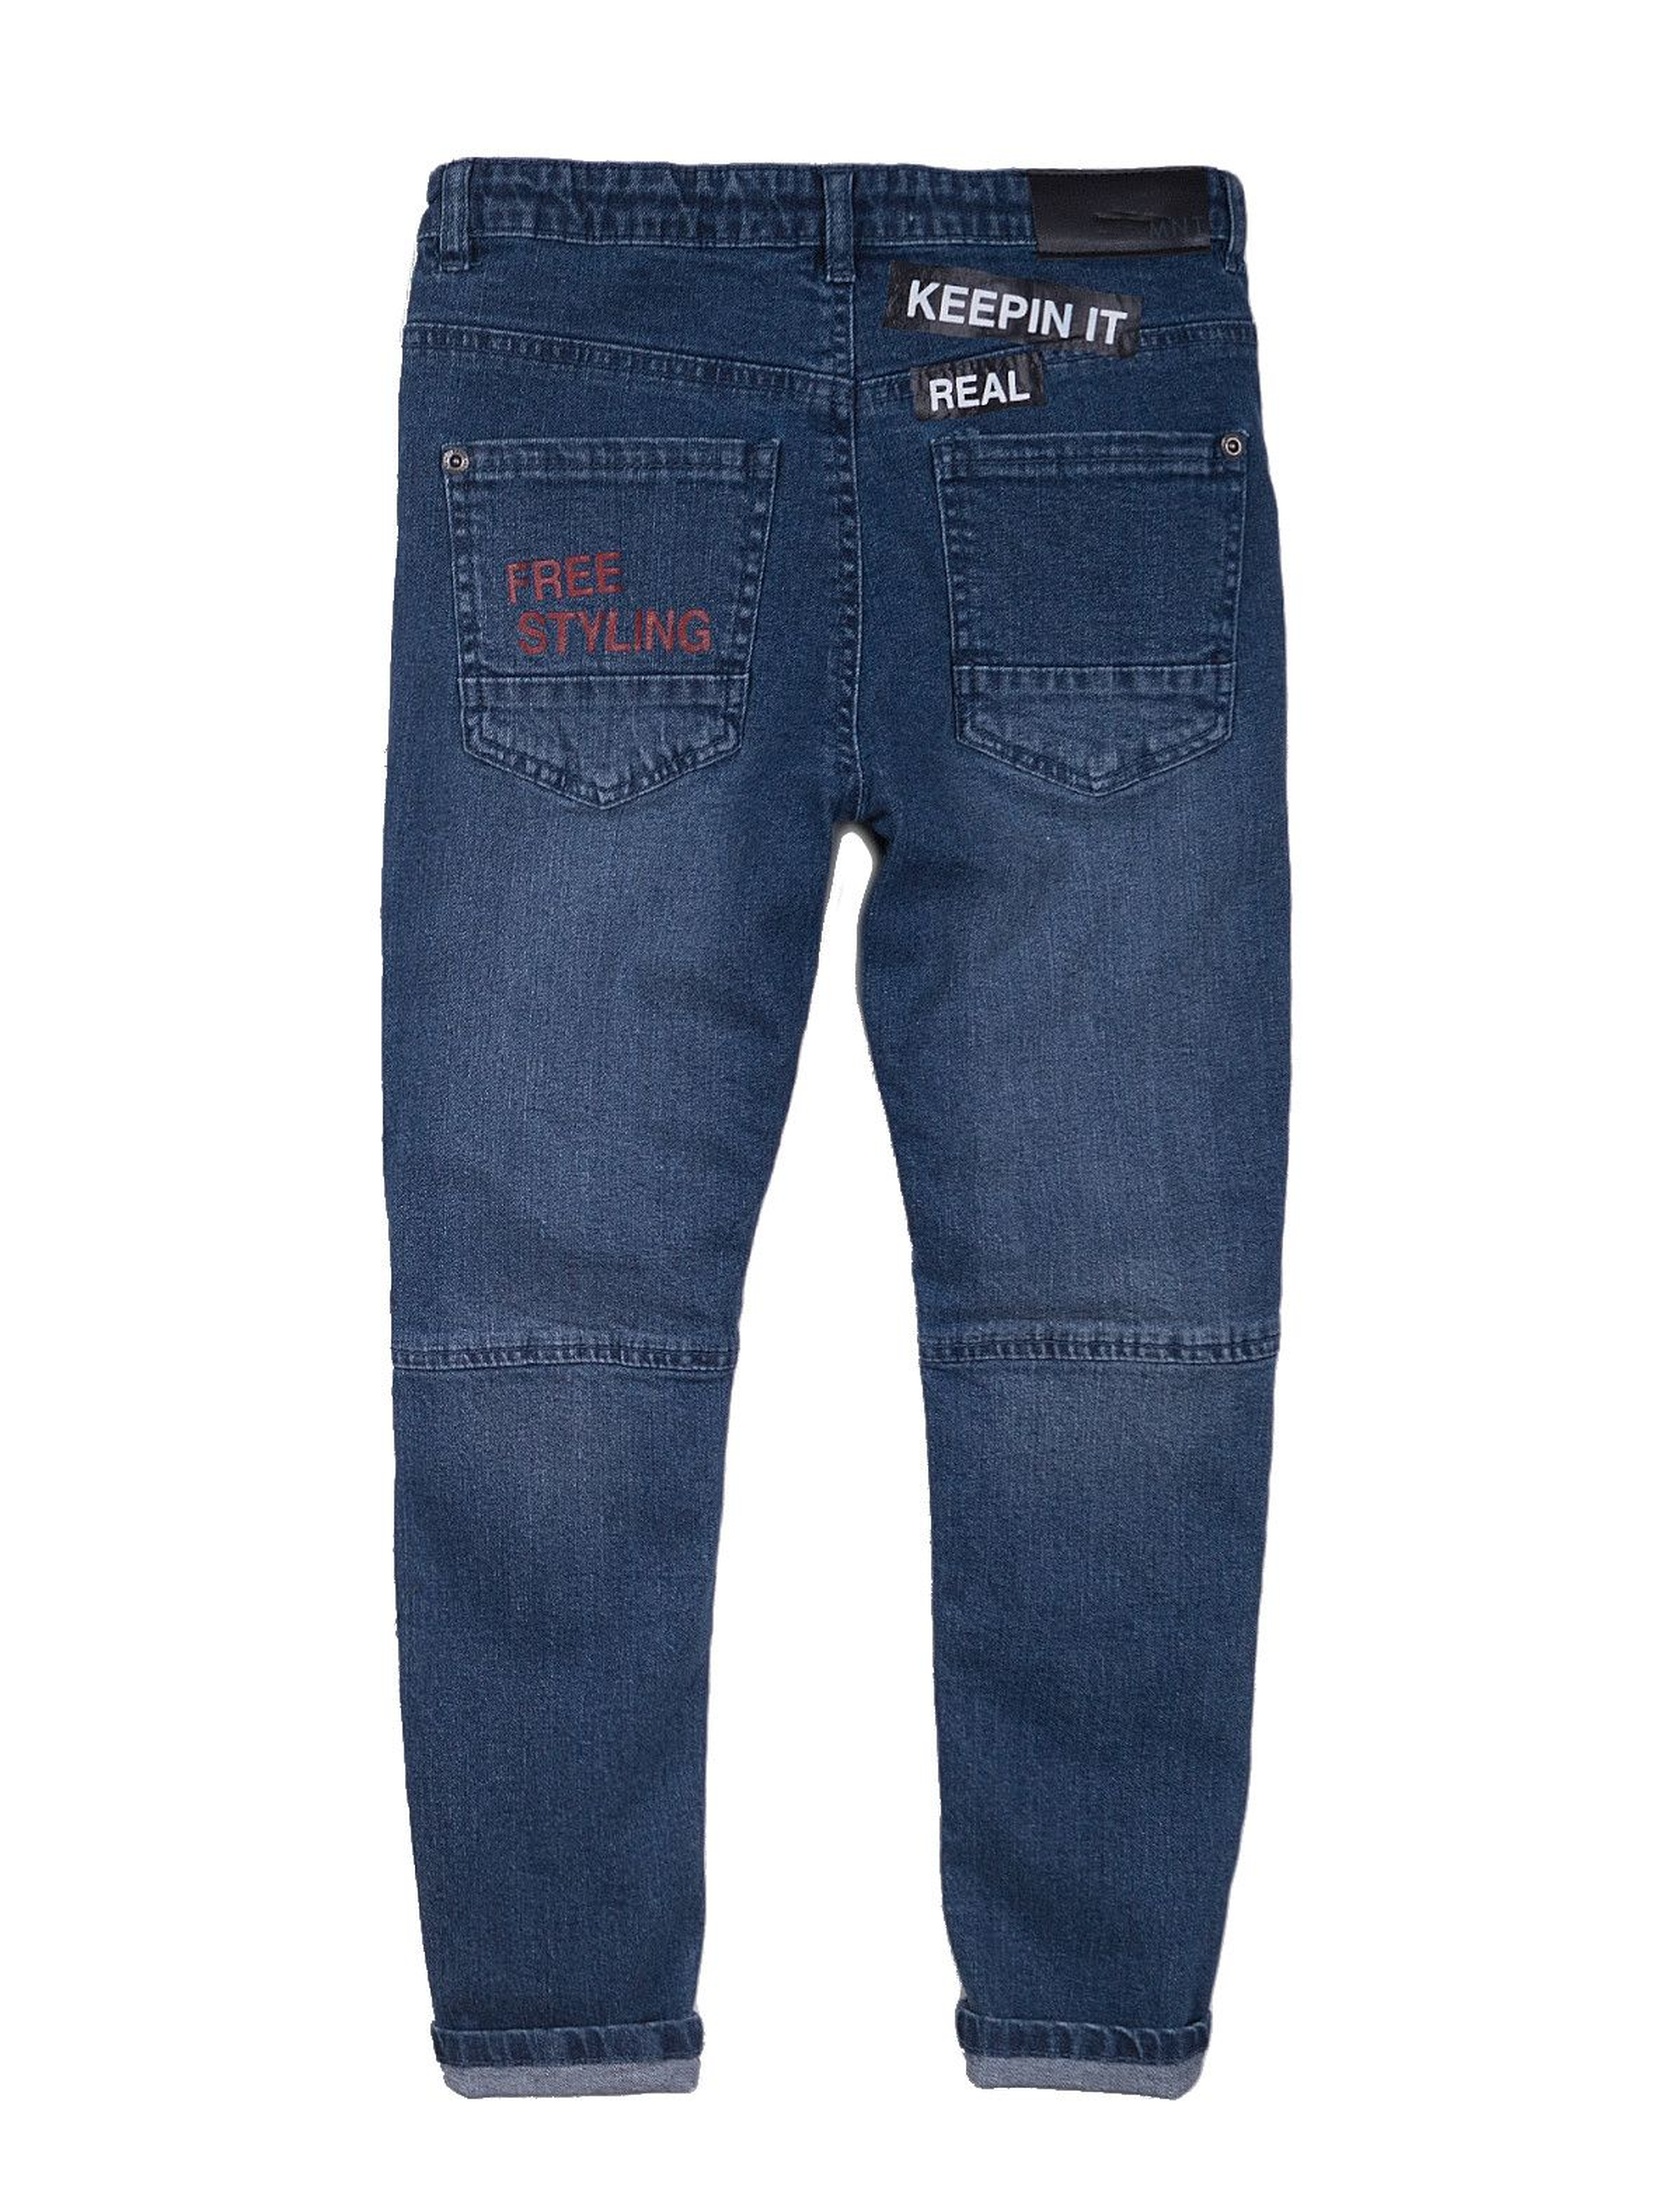 Spodnie chłopięce jeansowe z ozdobnym nadrukiem